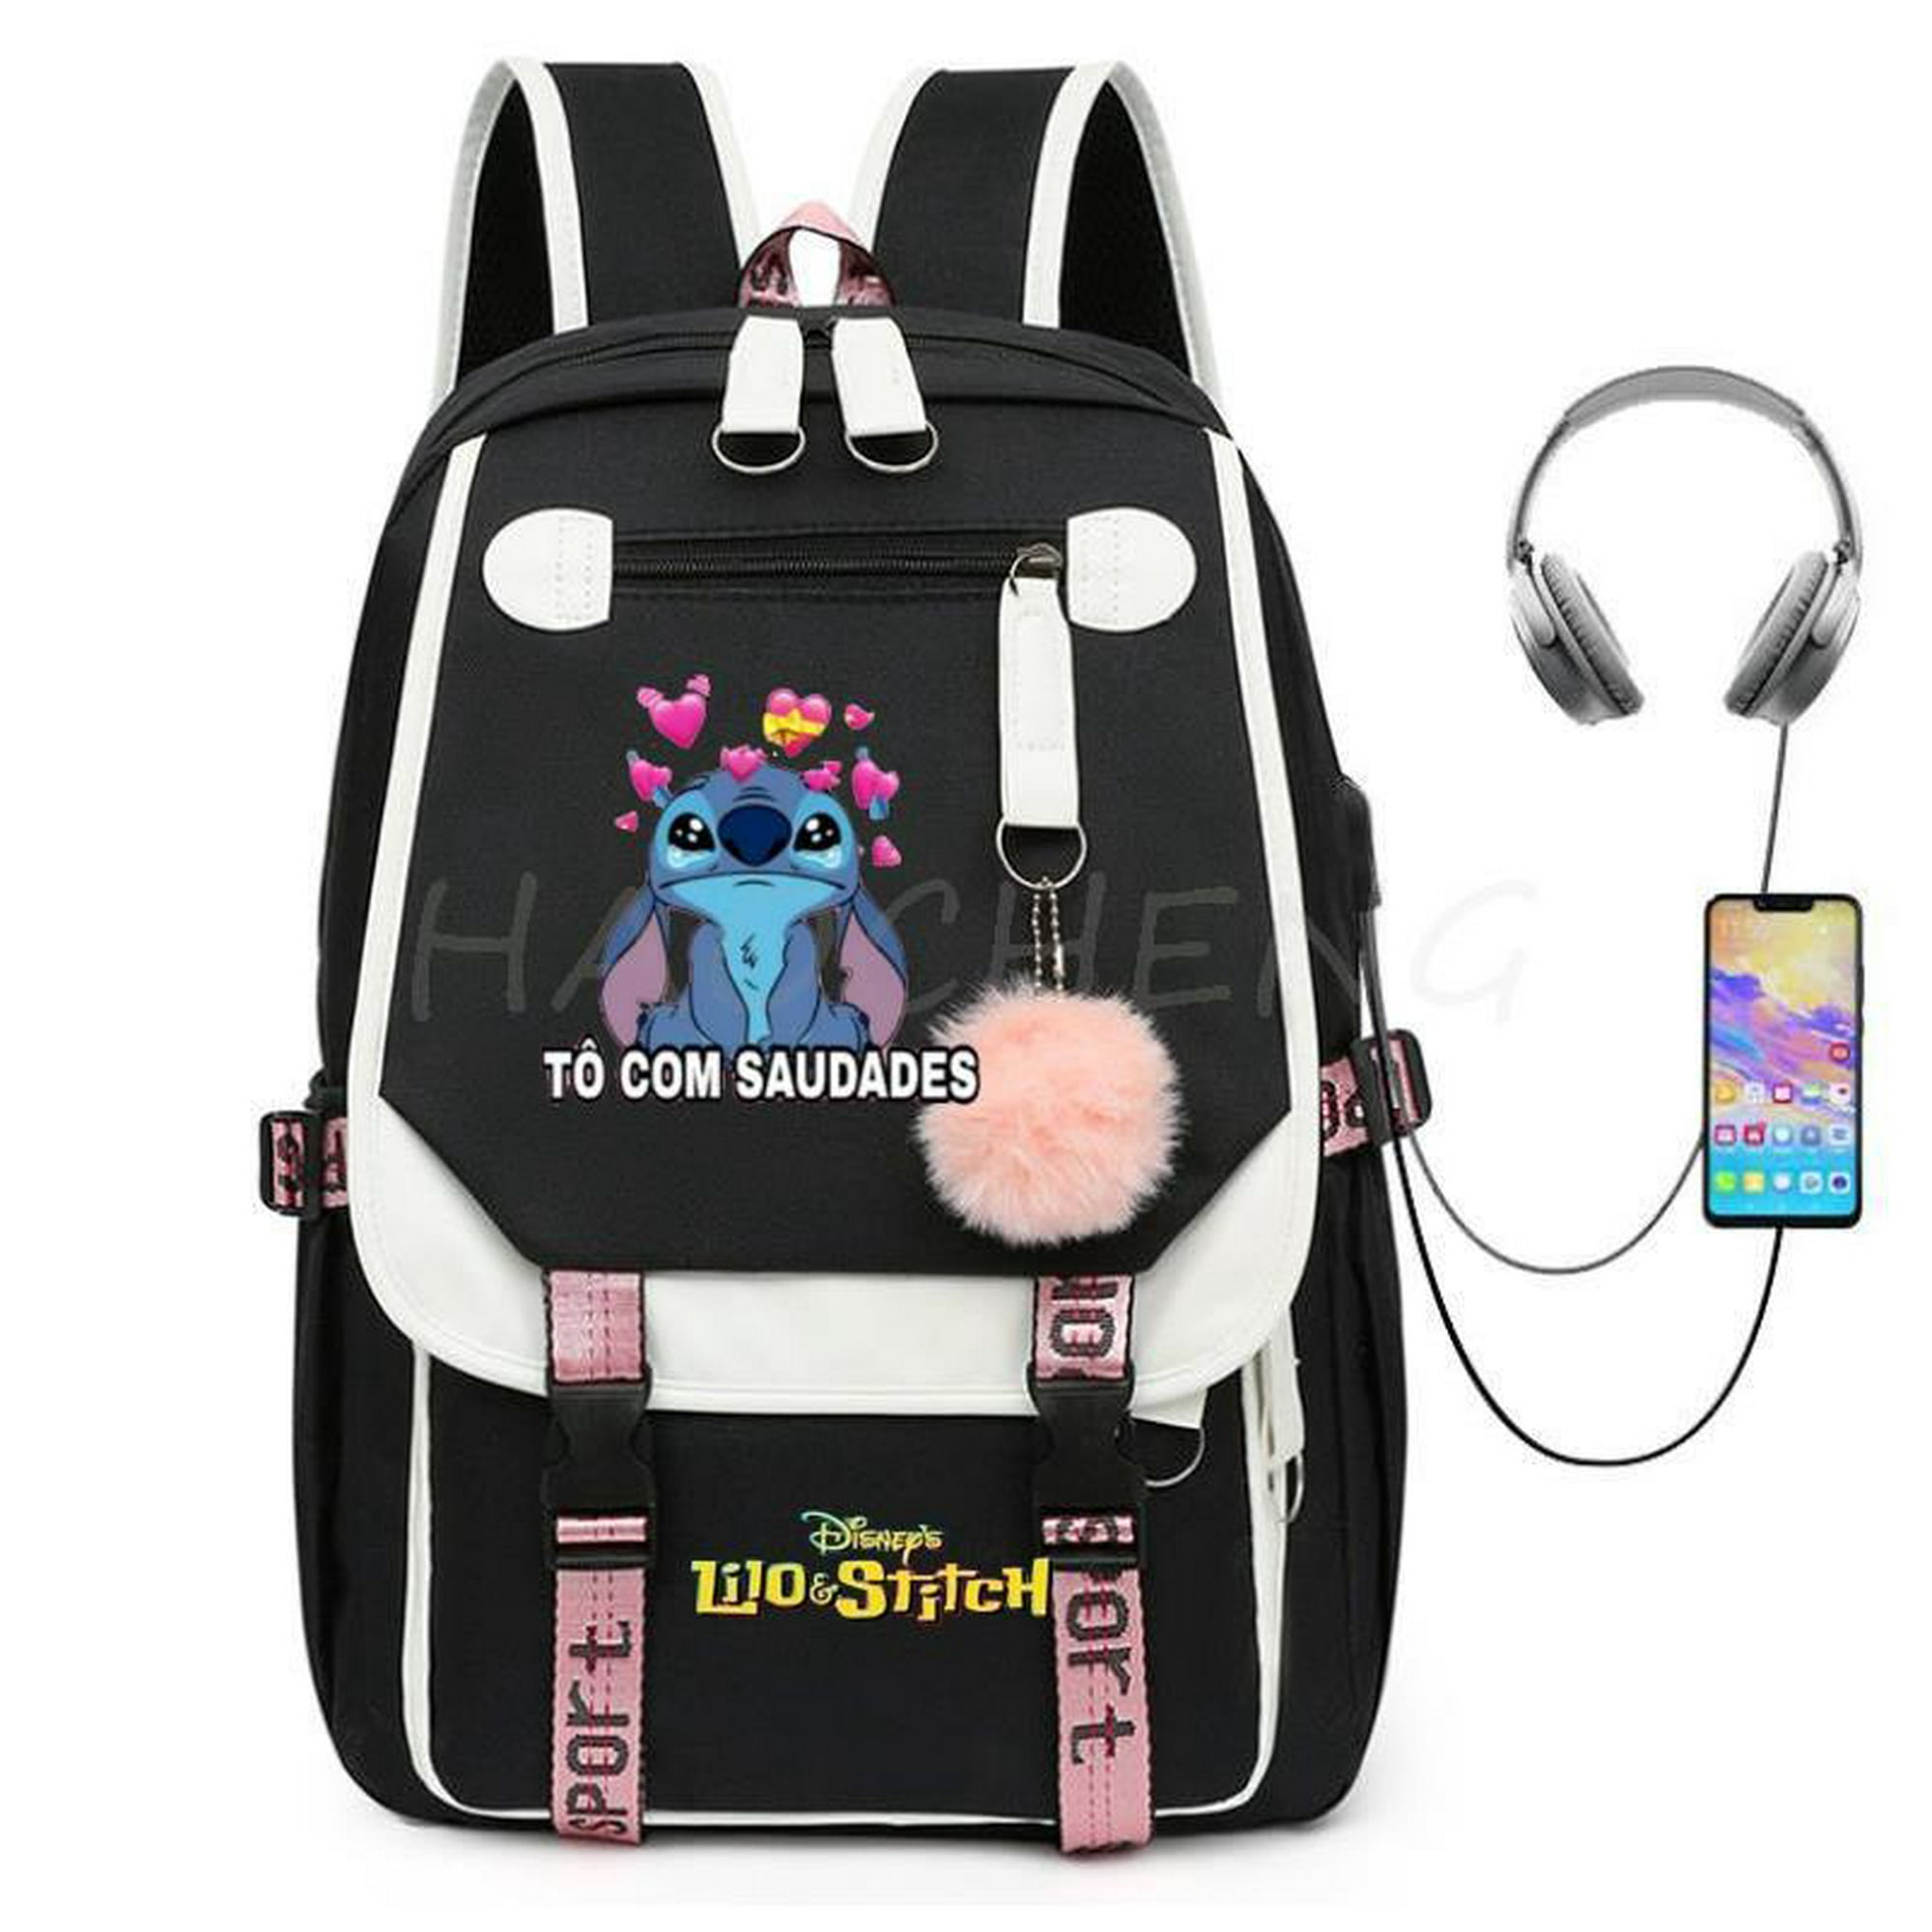 Juego de mochilas Disney Lilo & Stitch para niñas, 4 piezas